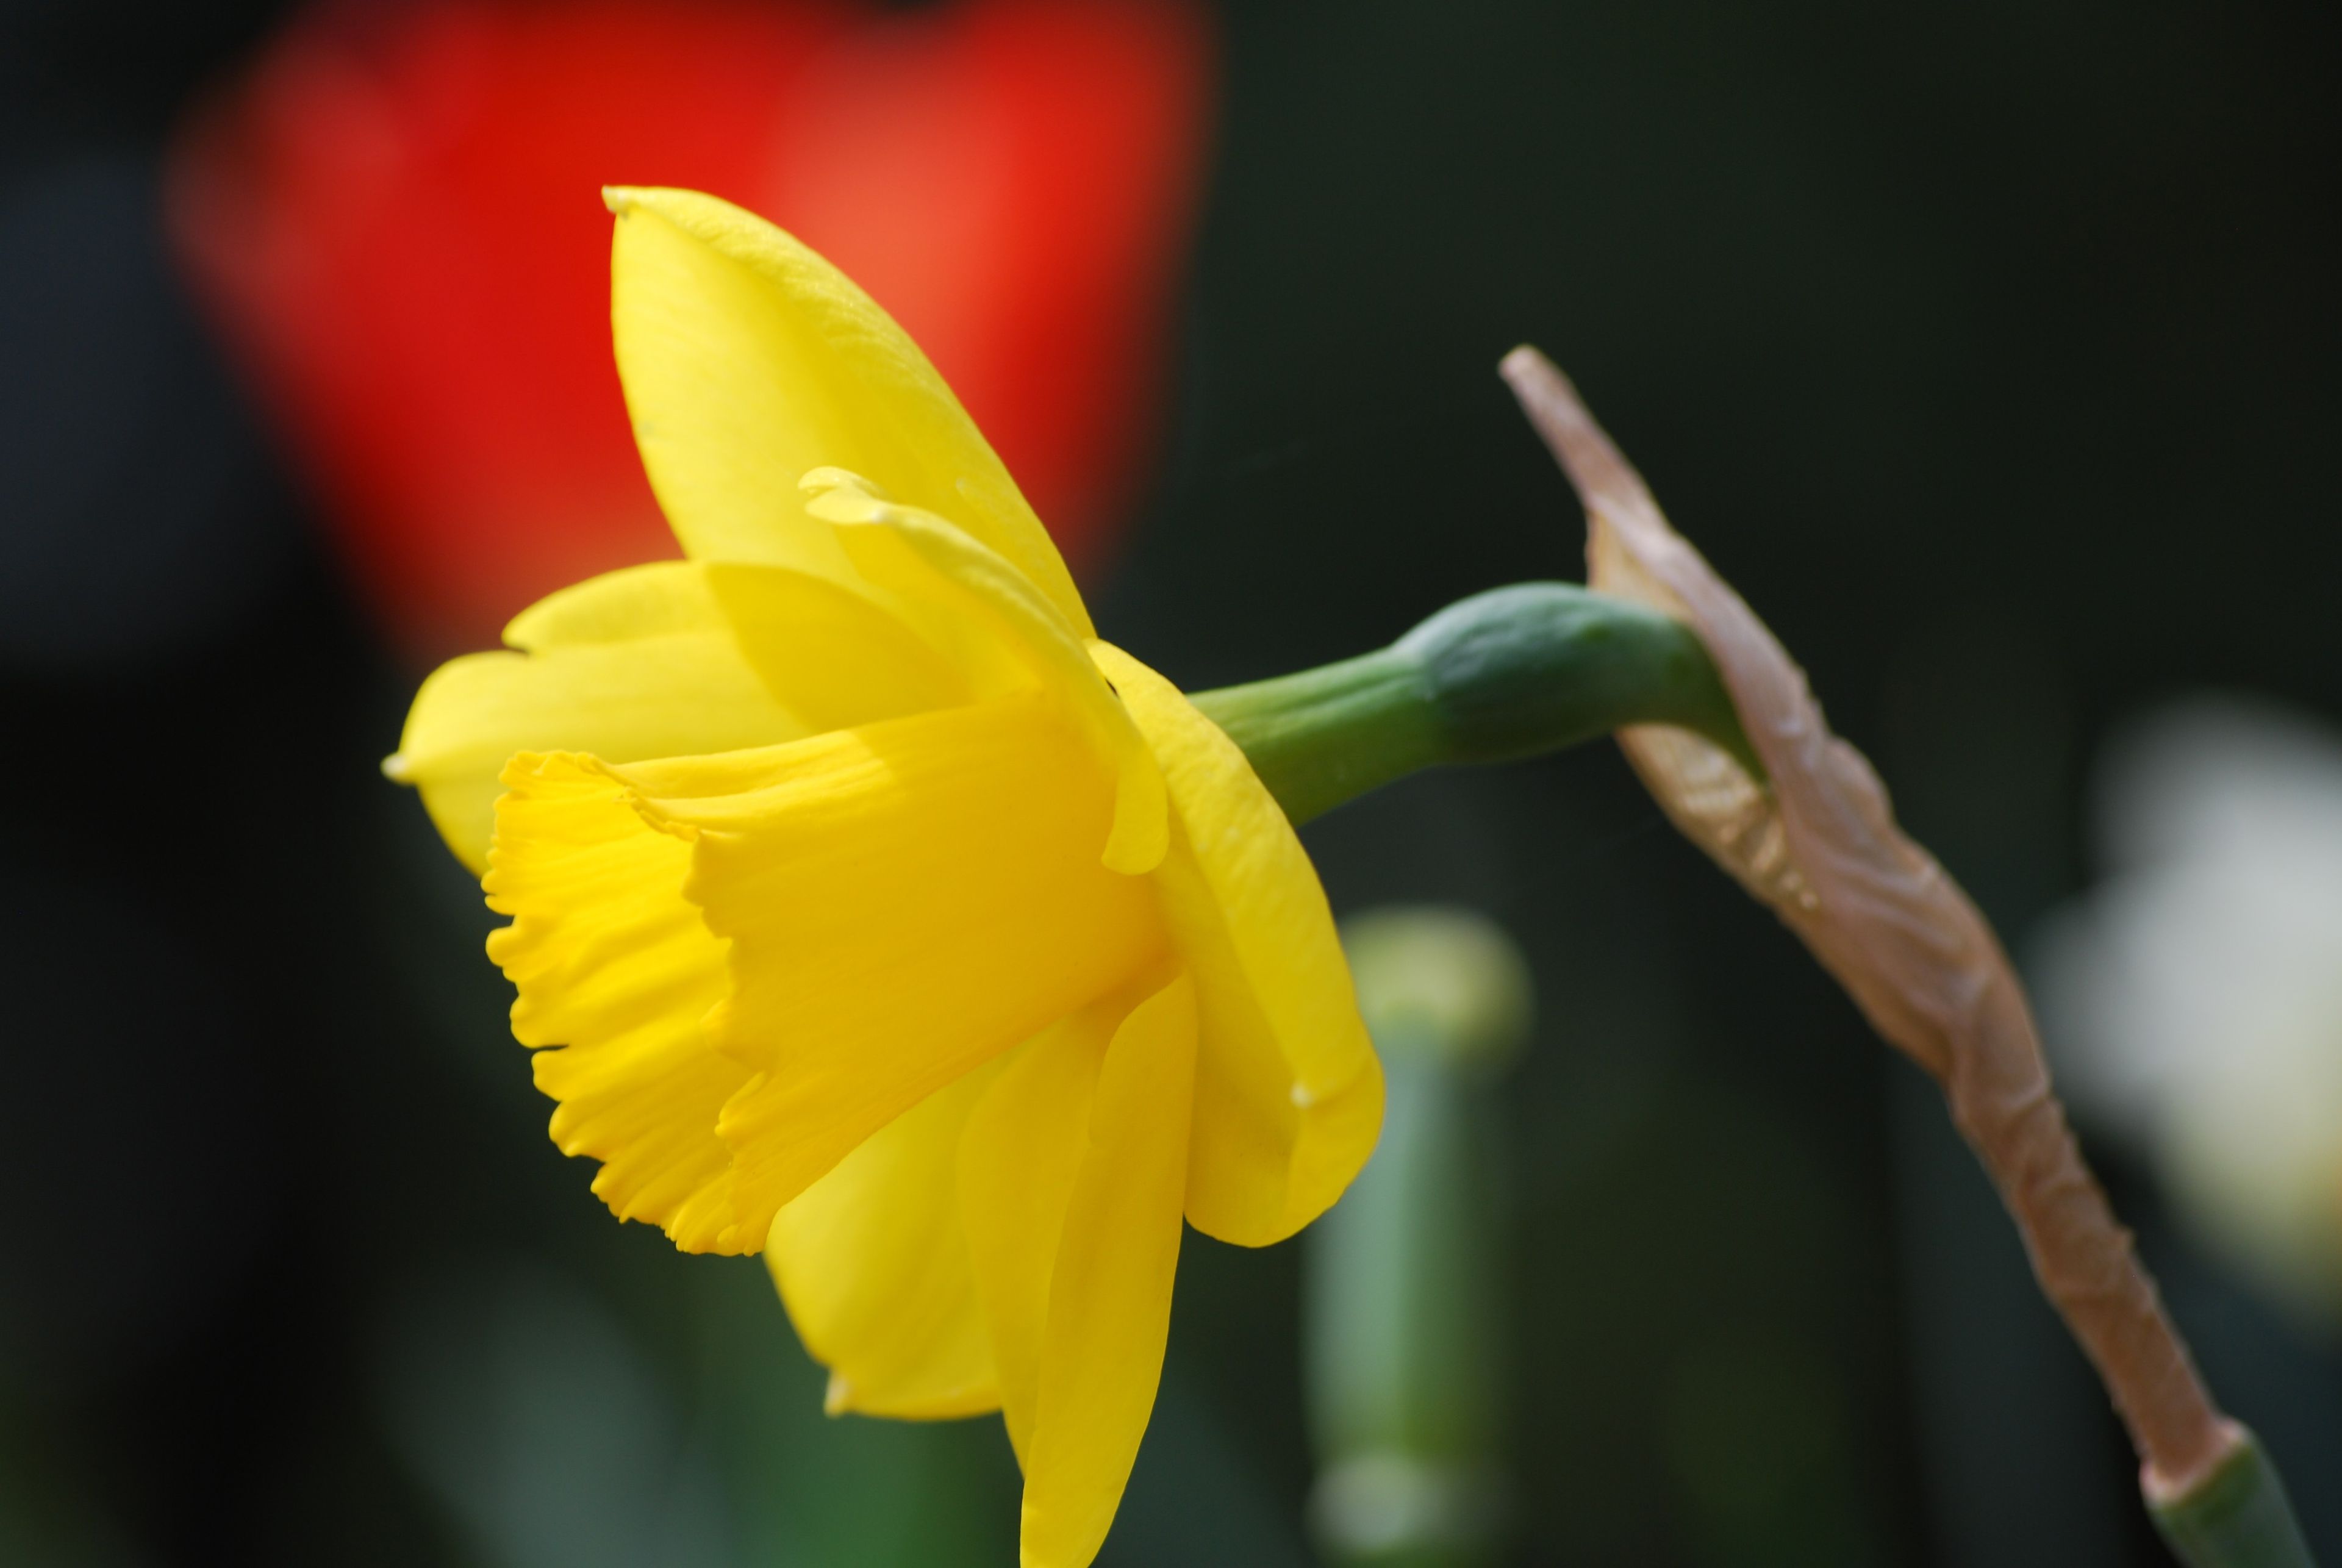 A yellow daffodil.